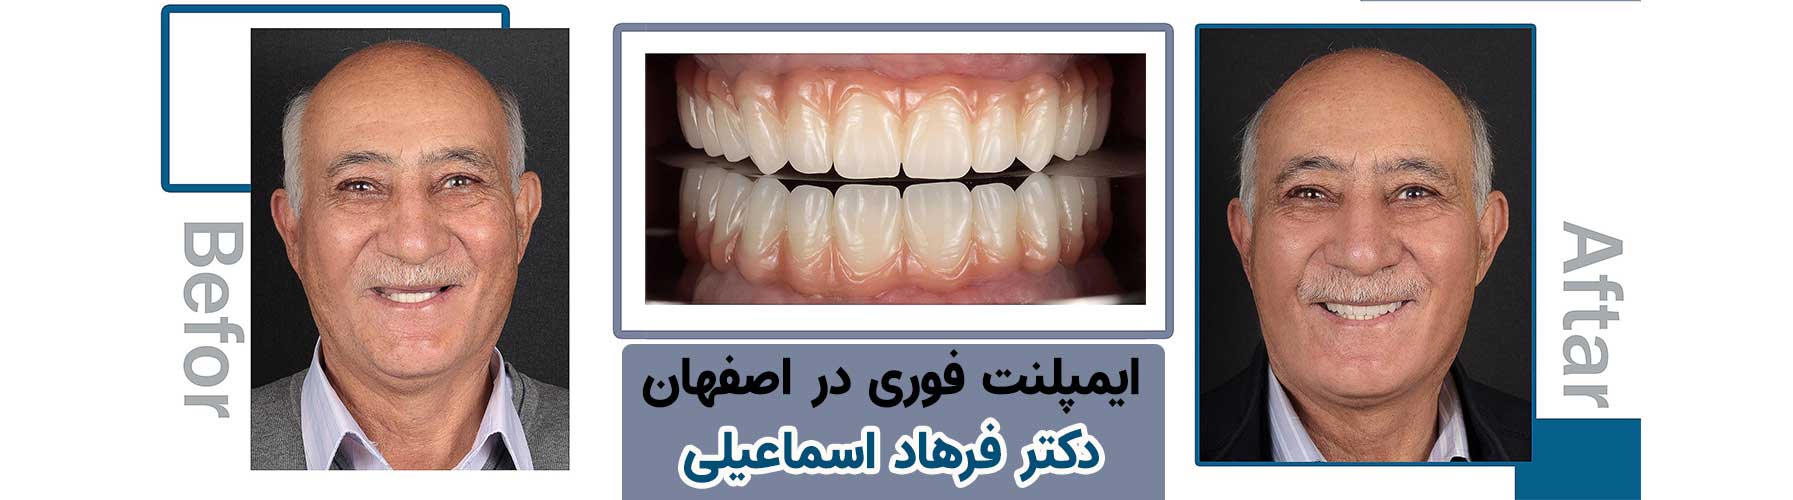 درمان بی دندانی با استفاده از ایمپلنت دیجیتال توسط دکتر فرهاد اسماعیلی